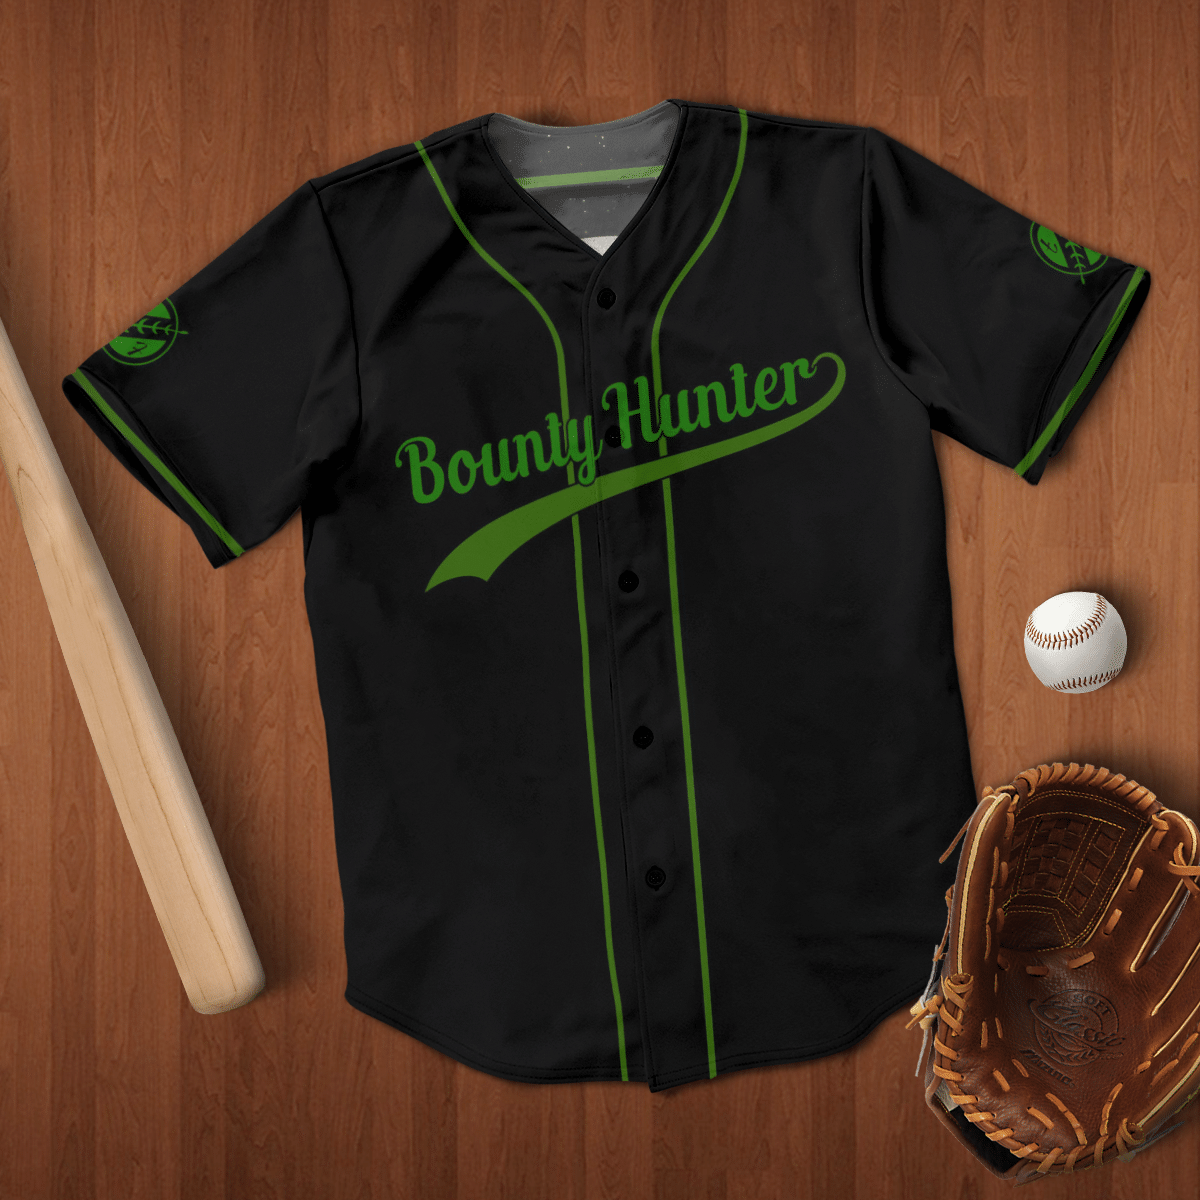 Bounty hunter baseball shirt